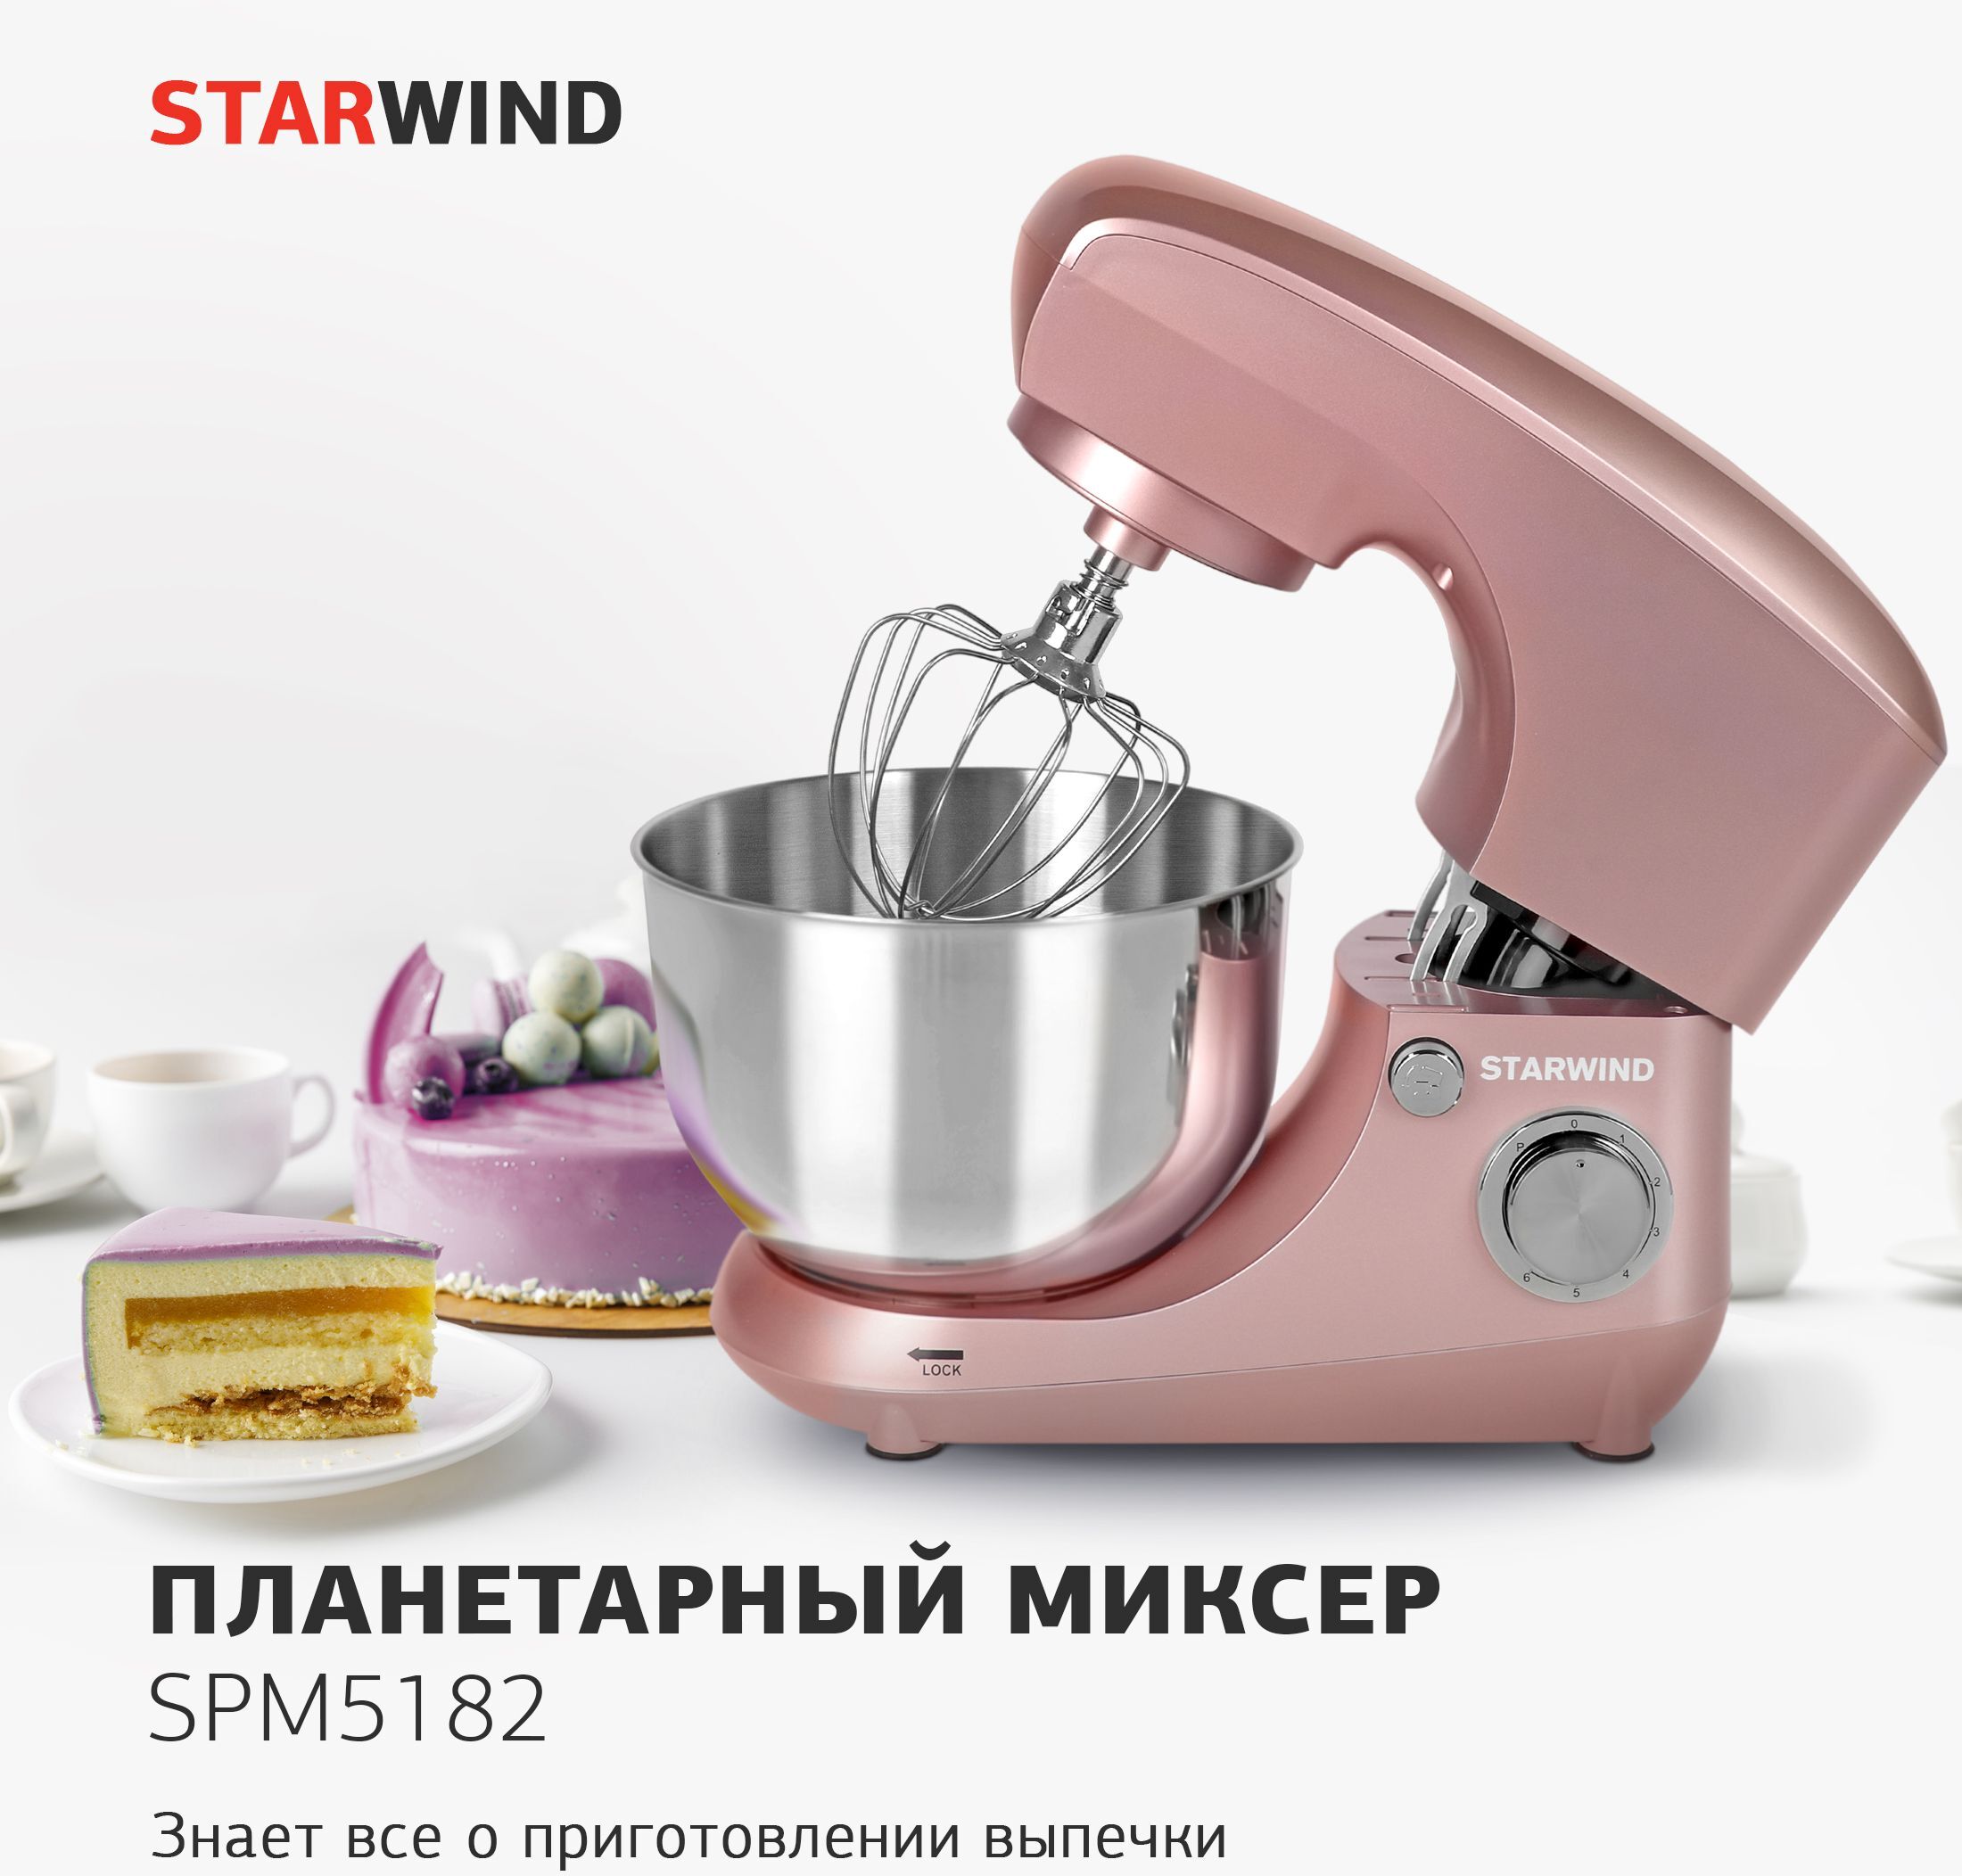 Планетарный миксер starwind spm5183